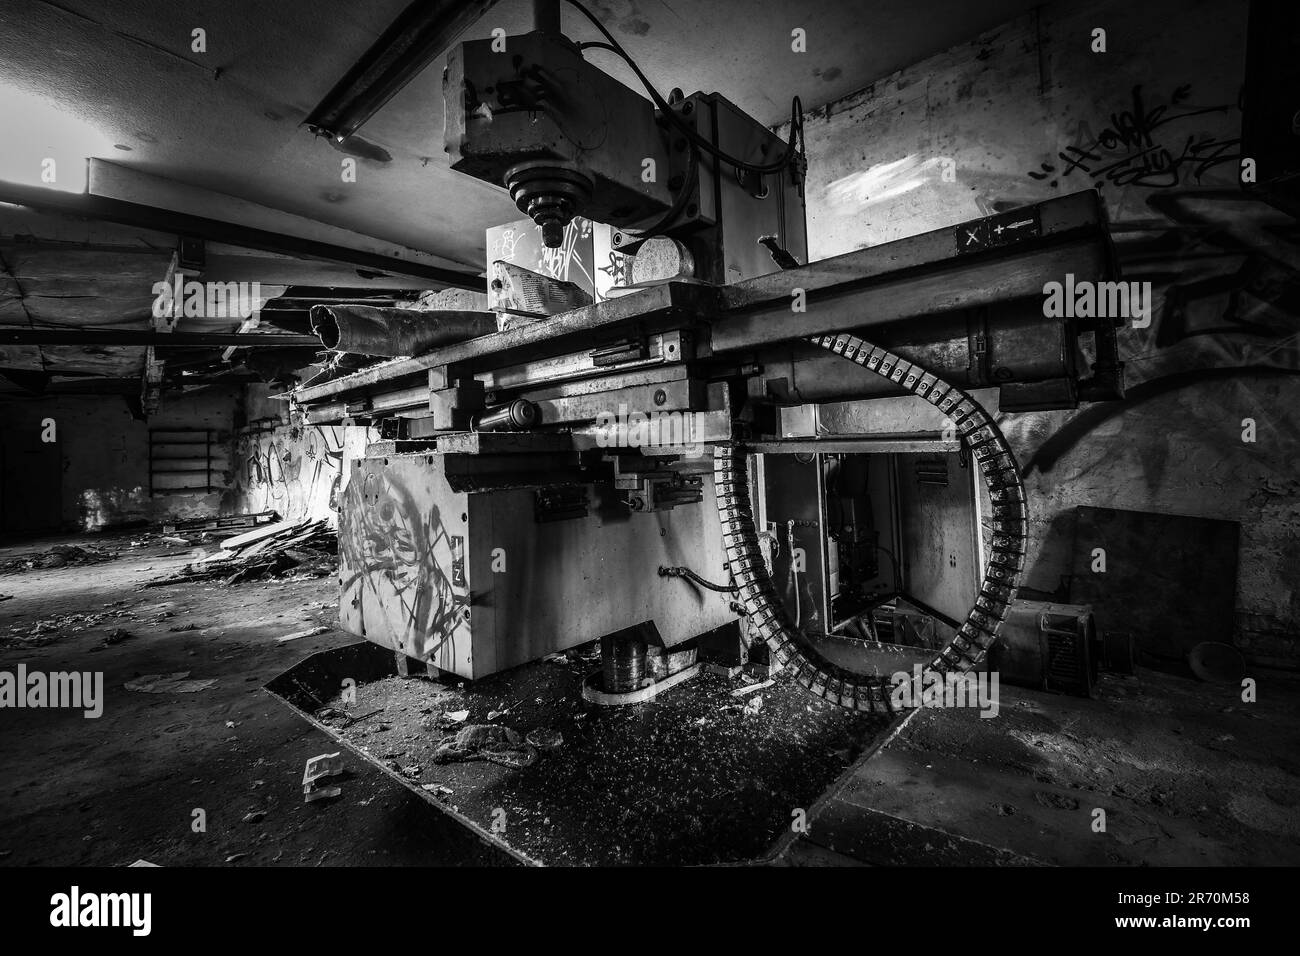 Maschinen an einem verlorenen Ort in Schwarz-Weiß Stockfoto